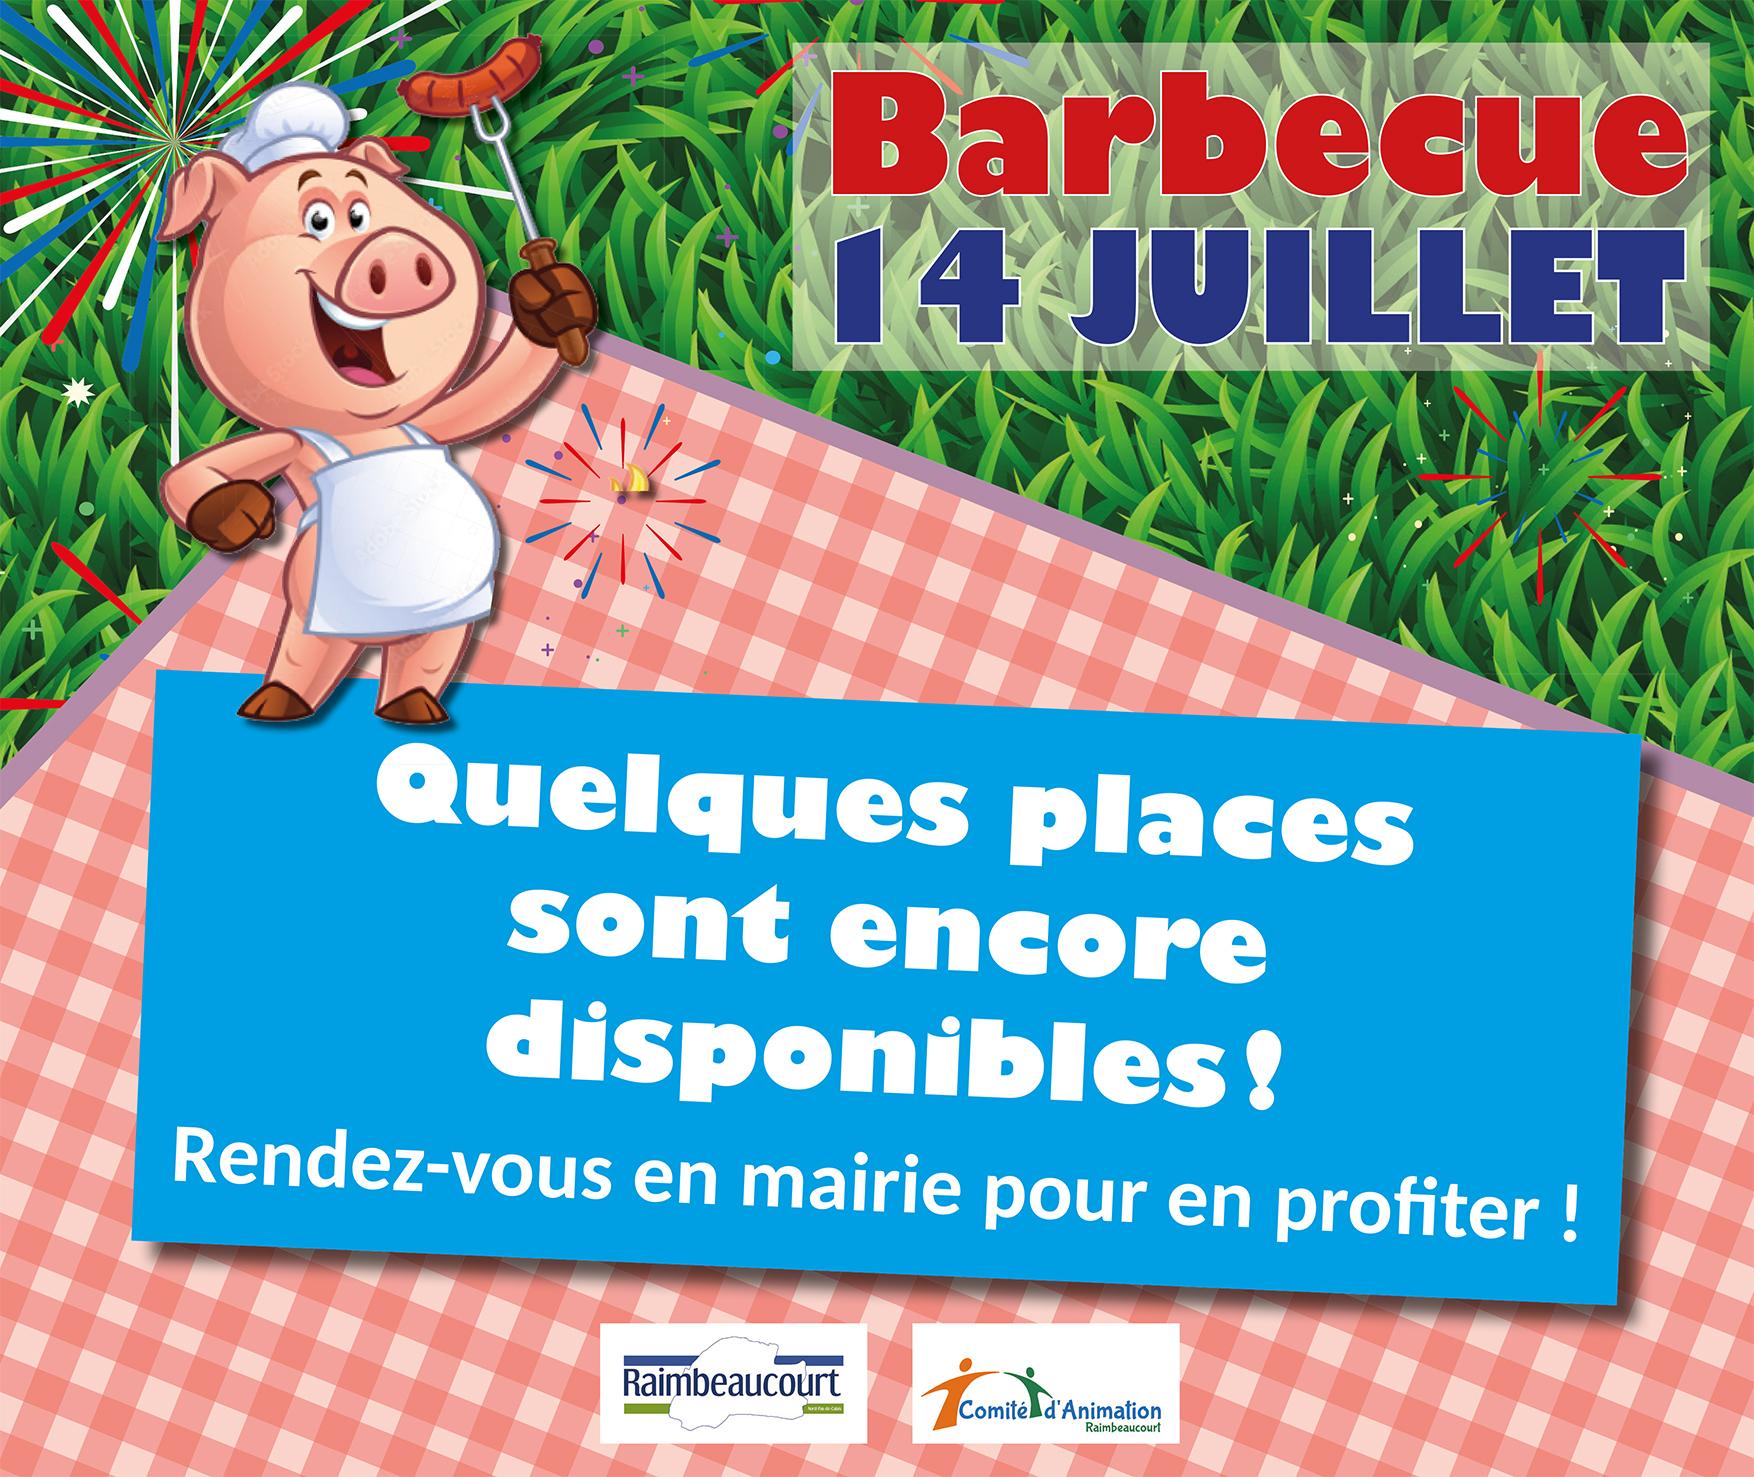 Image de couverture - Réservation pour le barbecue du 14 juillet